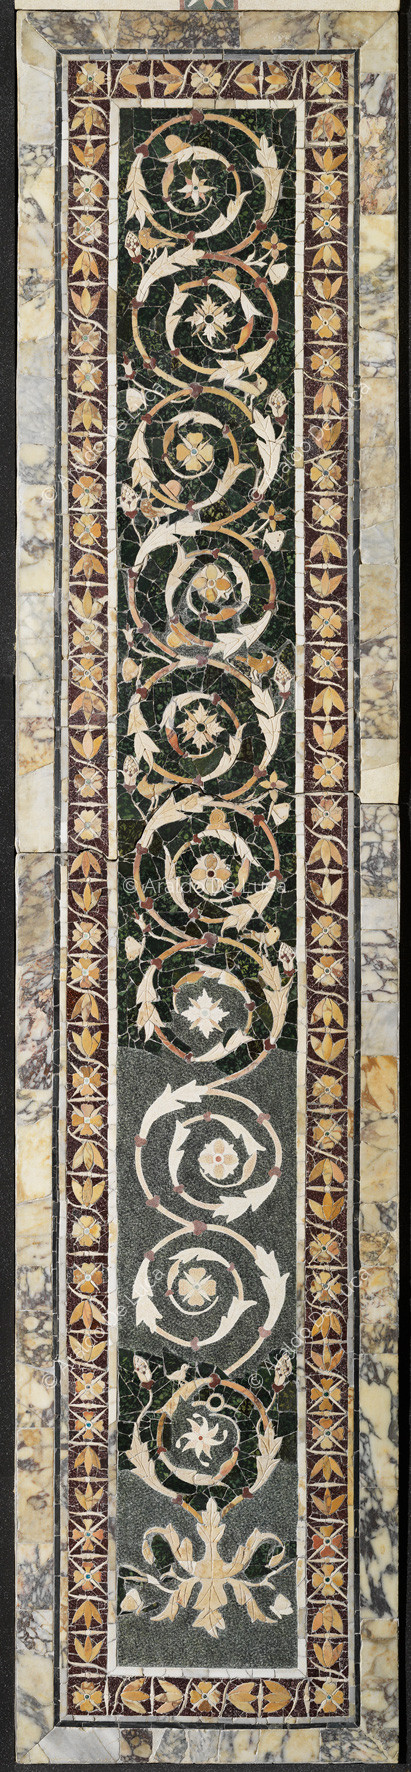 Pilastre avec la branche de fleurs et de bord de fleurs de lotus - Opus Sectile de Porta Marina, particulier